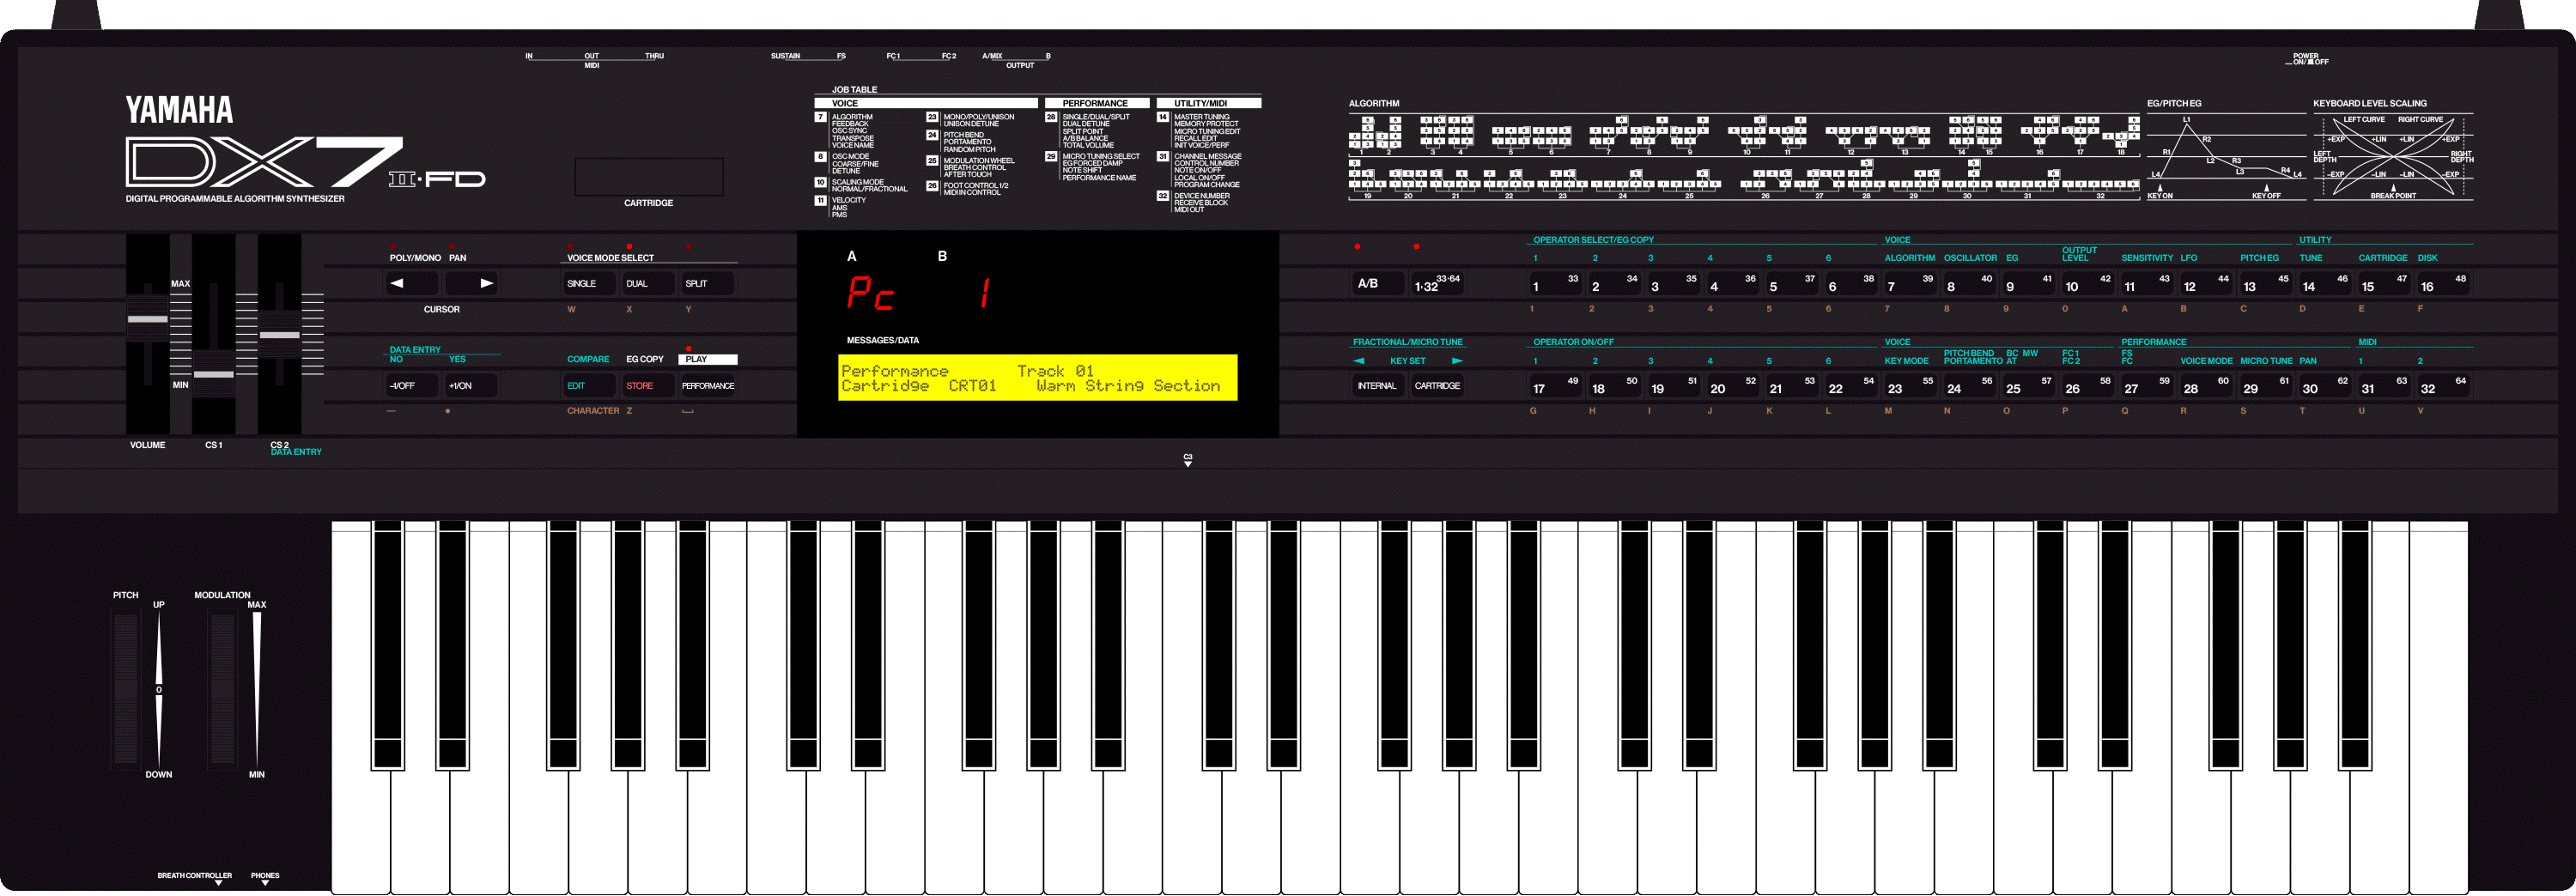 ヤマハDX7S - 鍵盤楽器